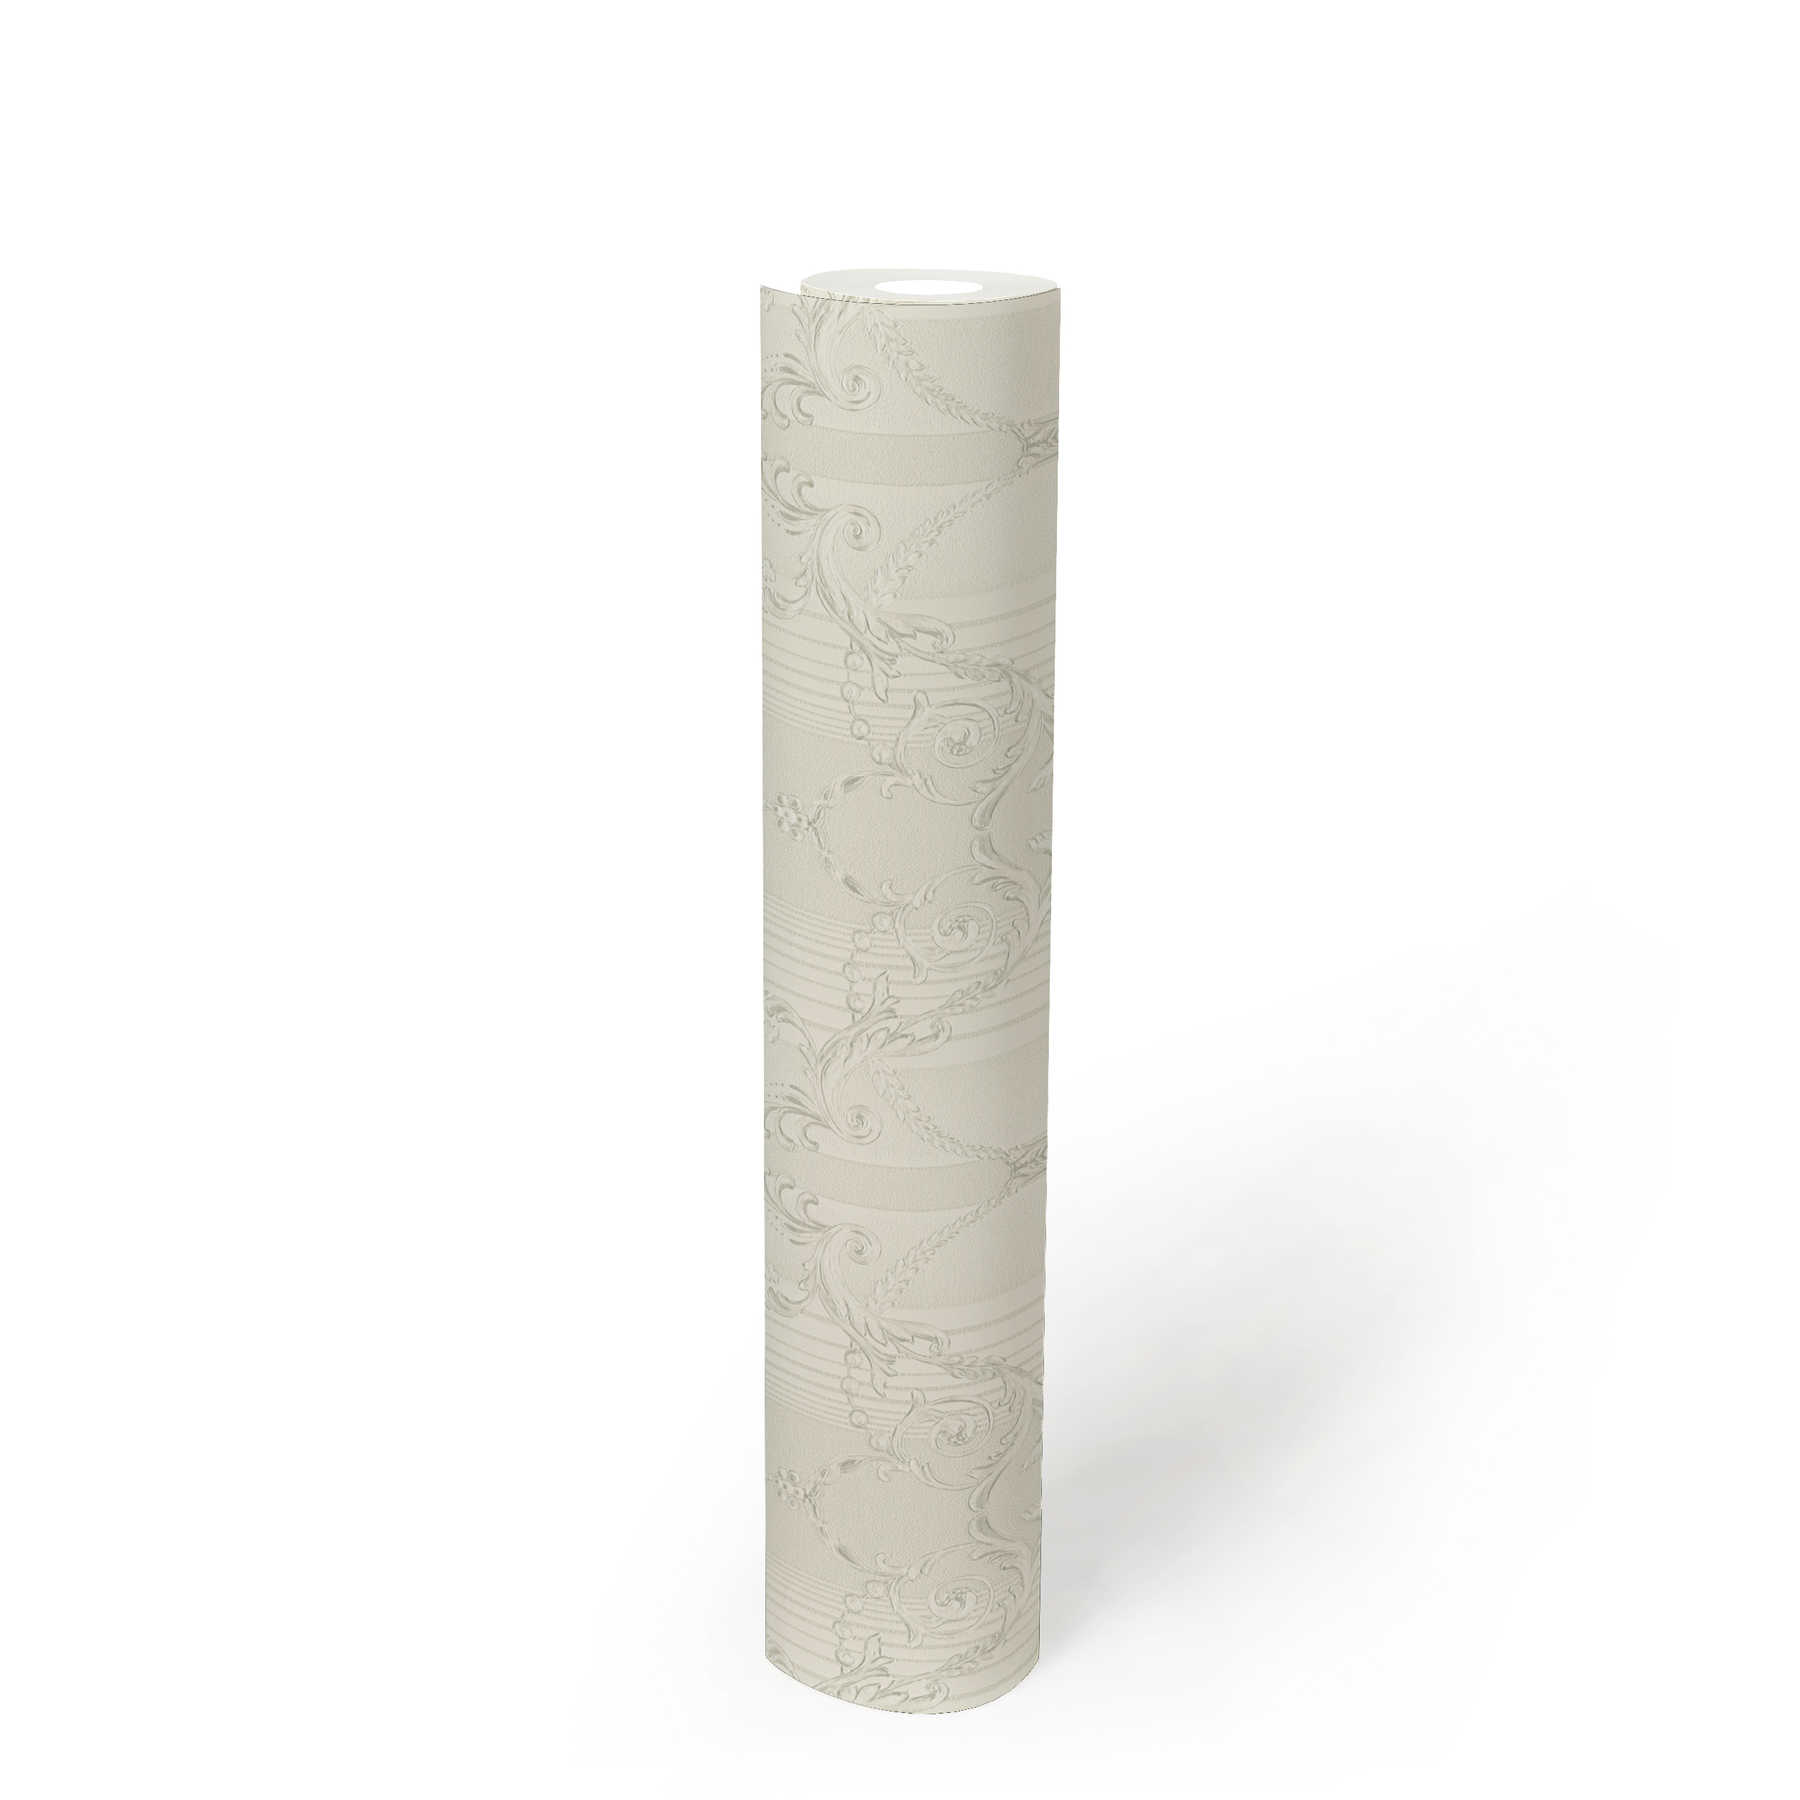             Papel pintado neobarroco con diseño ornamental y efecto metálico - metálico, blanco
        